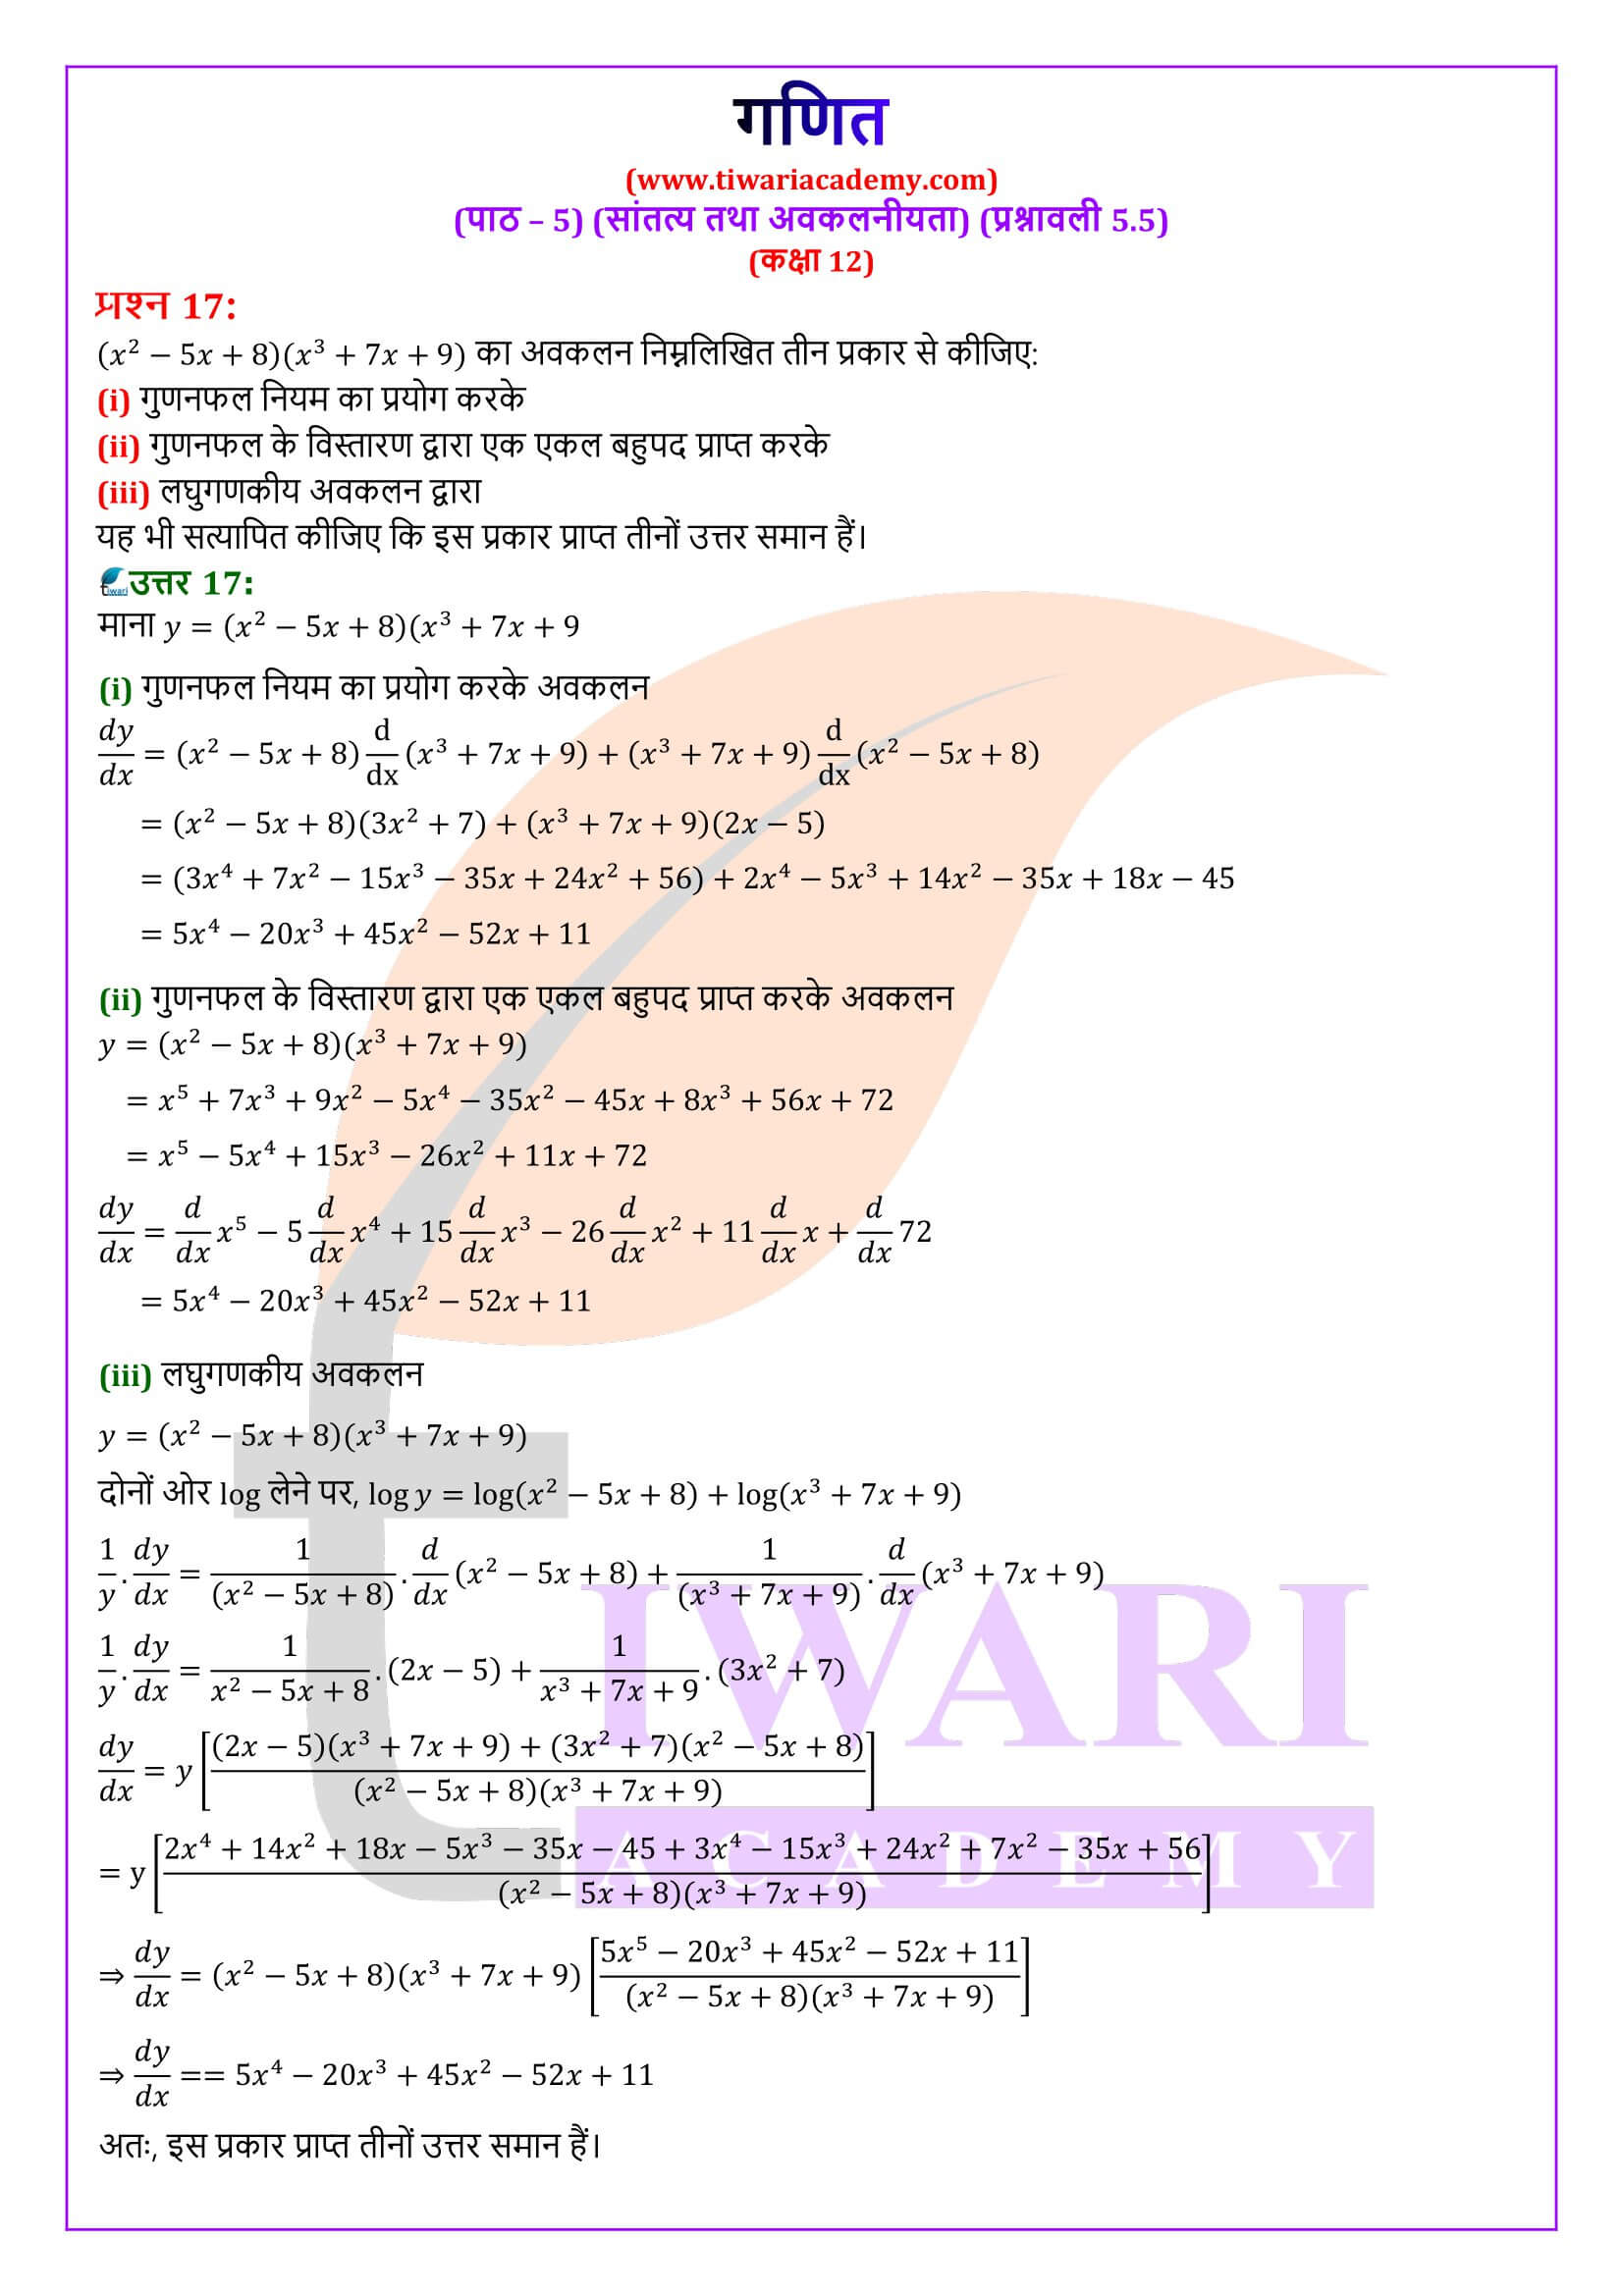 कक्षा 12 गणित अभ्यास 5.5 के उत्तर हिंदी में